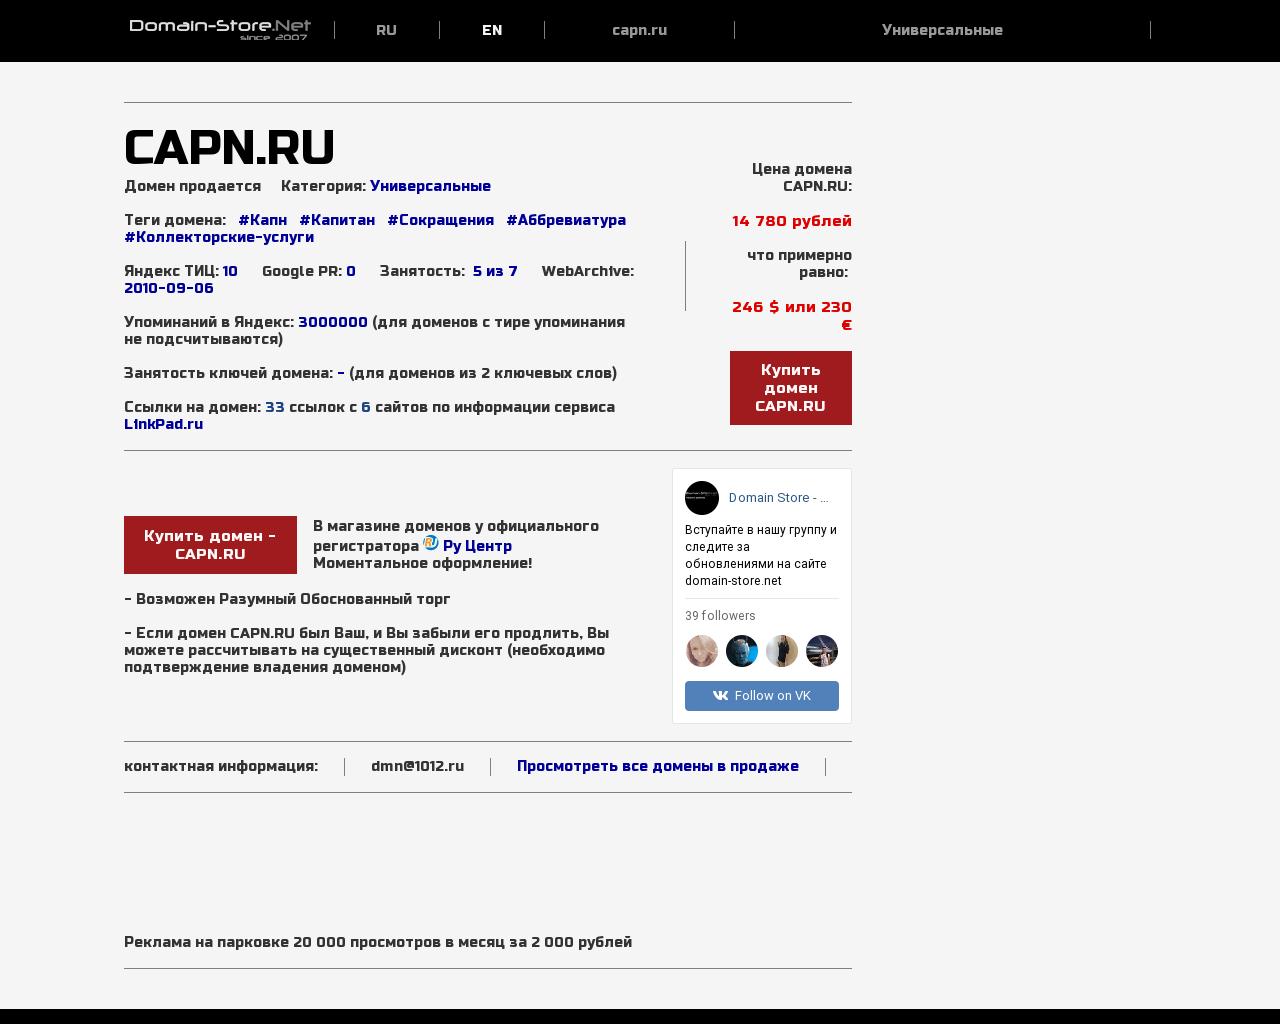 Изображение сайта capn.ru в разрешении 1280x1024